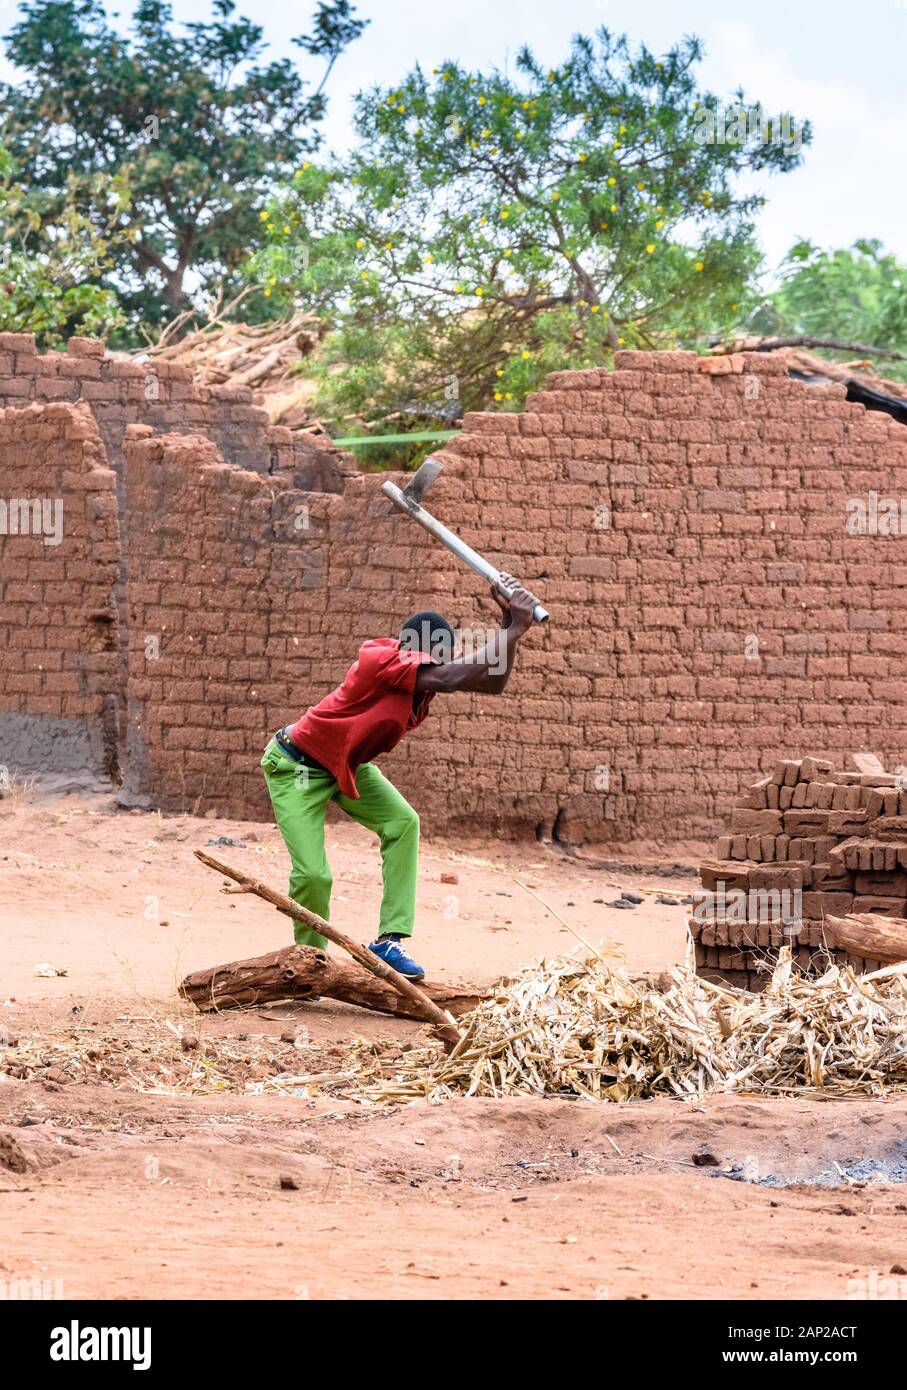 Ein malawischer Mann, der mit einer Axt Brennholz hackt, um in einem Dorf im Zentrum Malawis einen kleinen Ofen aus hausgemachten Backsteinen zu backen Stockfoto